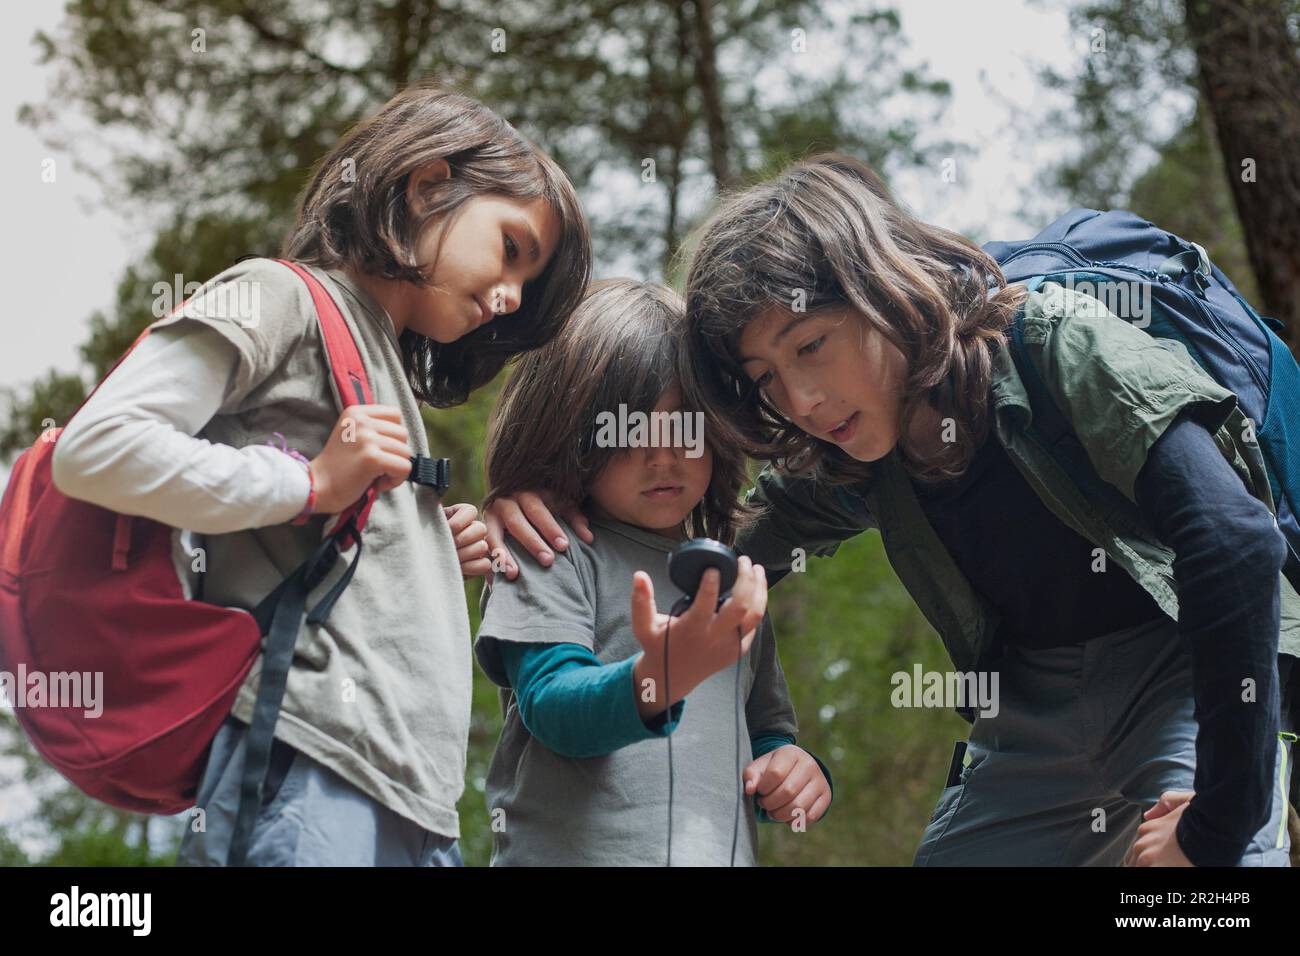 Drei Kinder sind in einem Wald und suchen einen Kompass, um zu navigieren und ihren Weg zu finden. Stockfoto